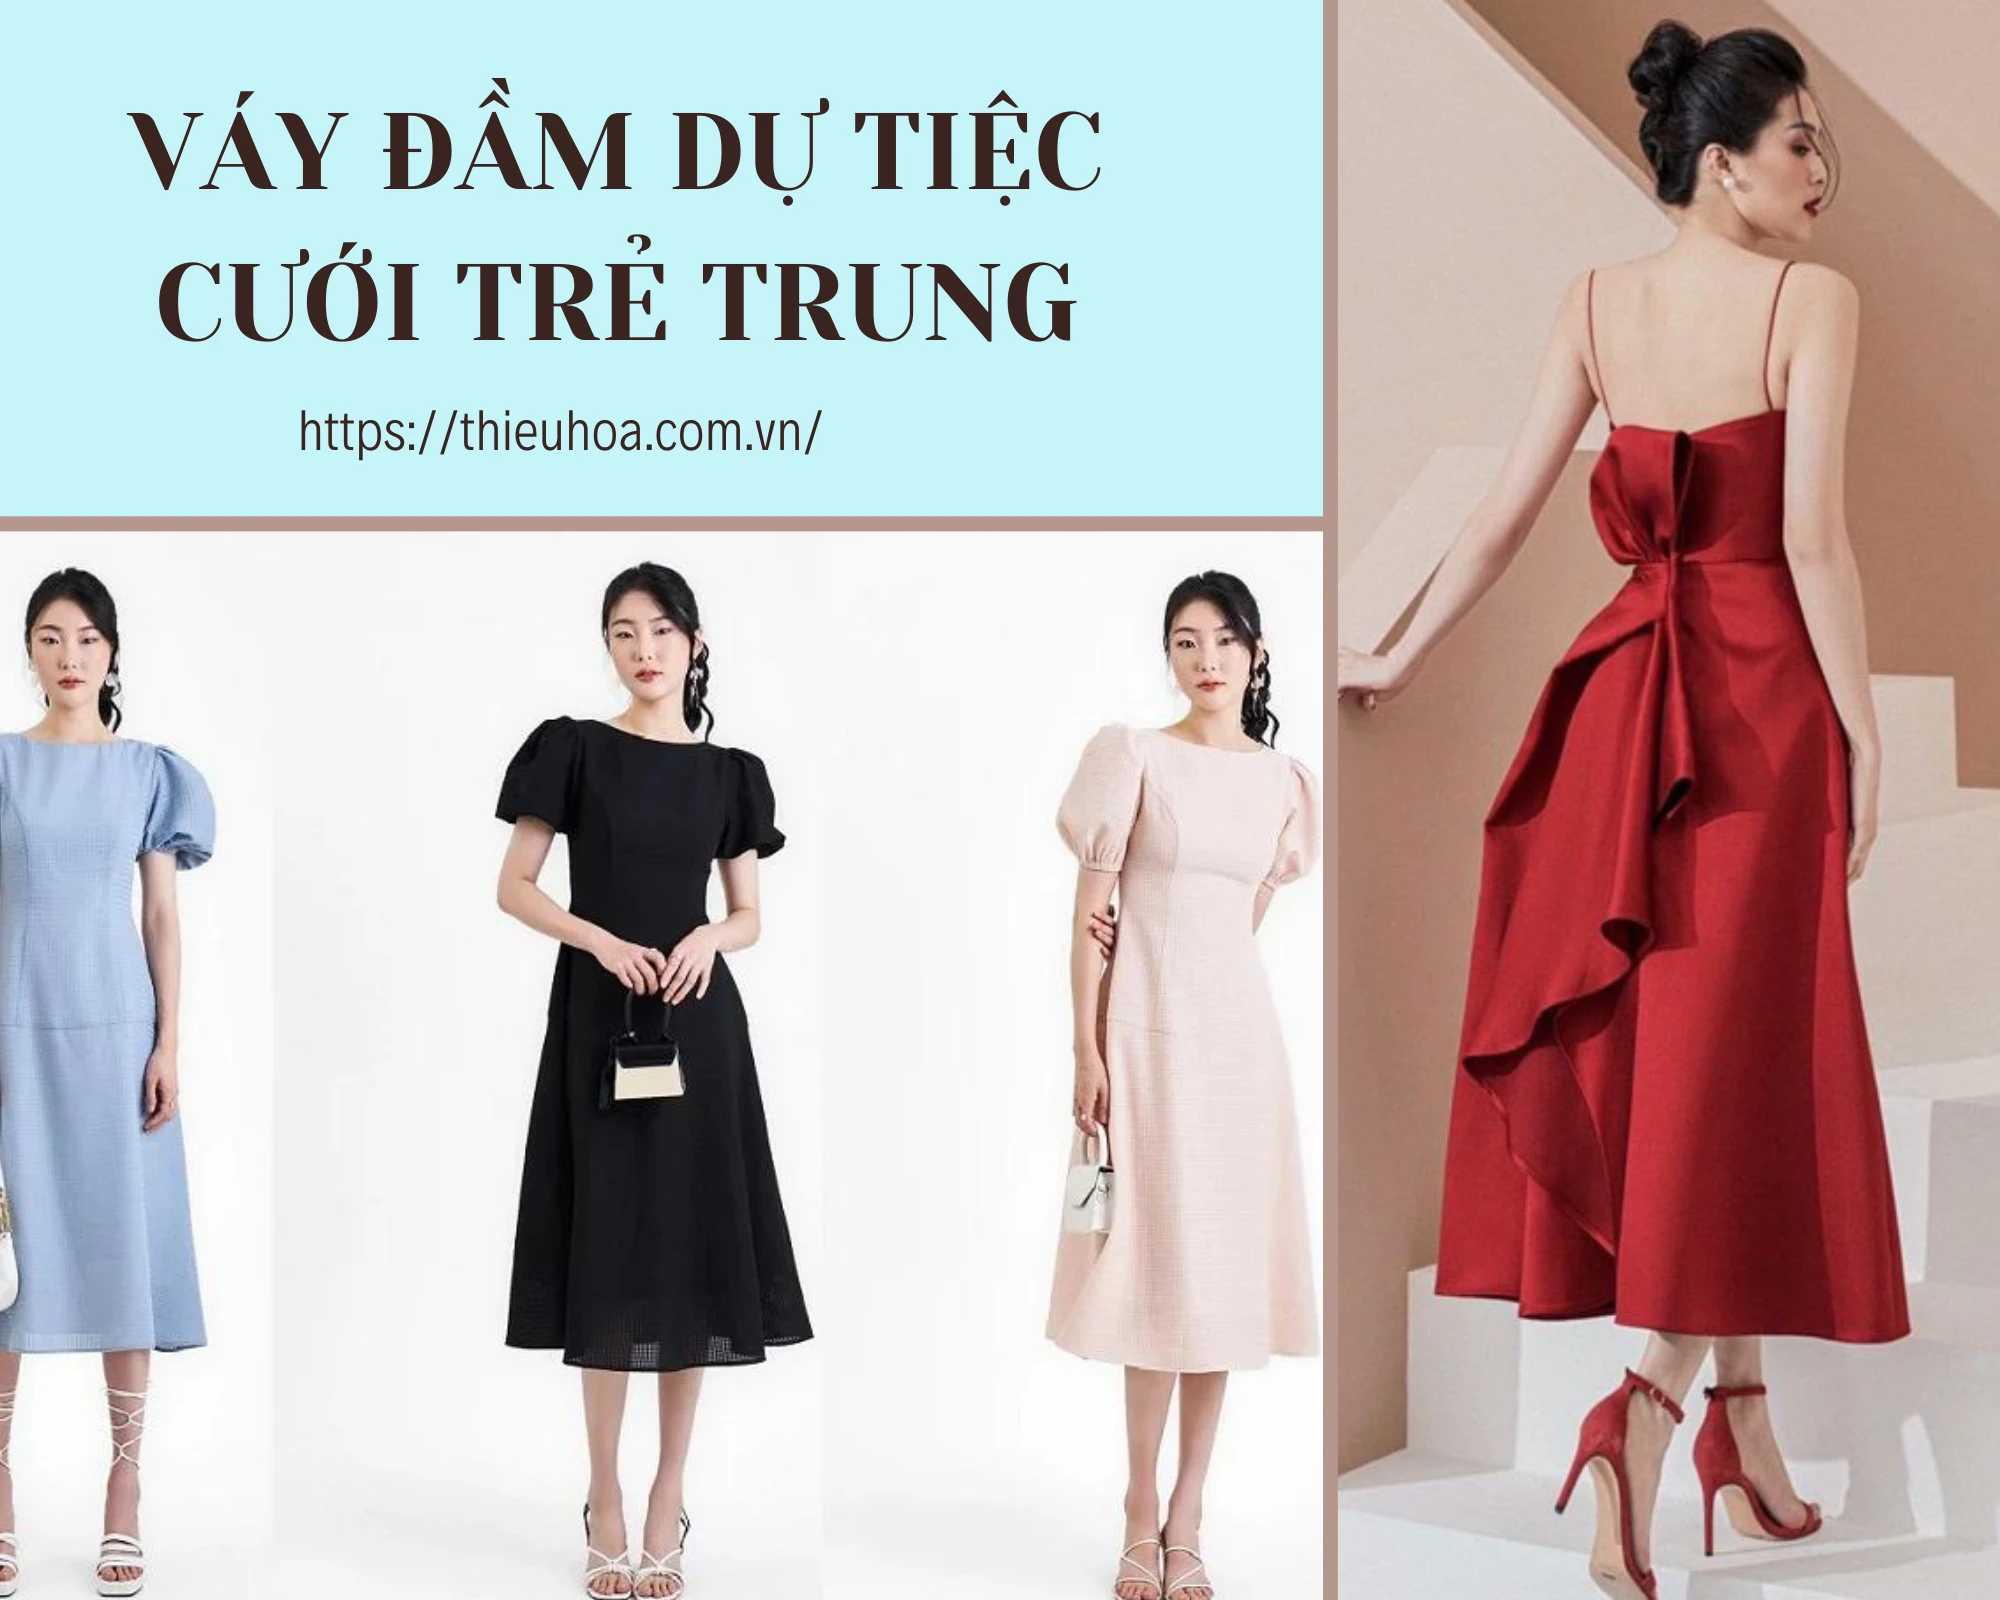 Những mẫu váy đẹp nhất hiện nay  TOP TREND  DVC Fashion